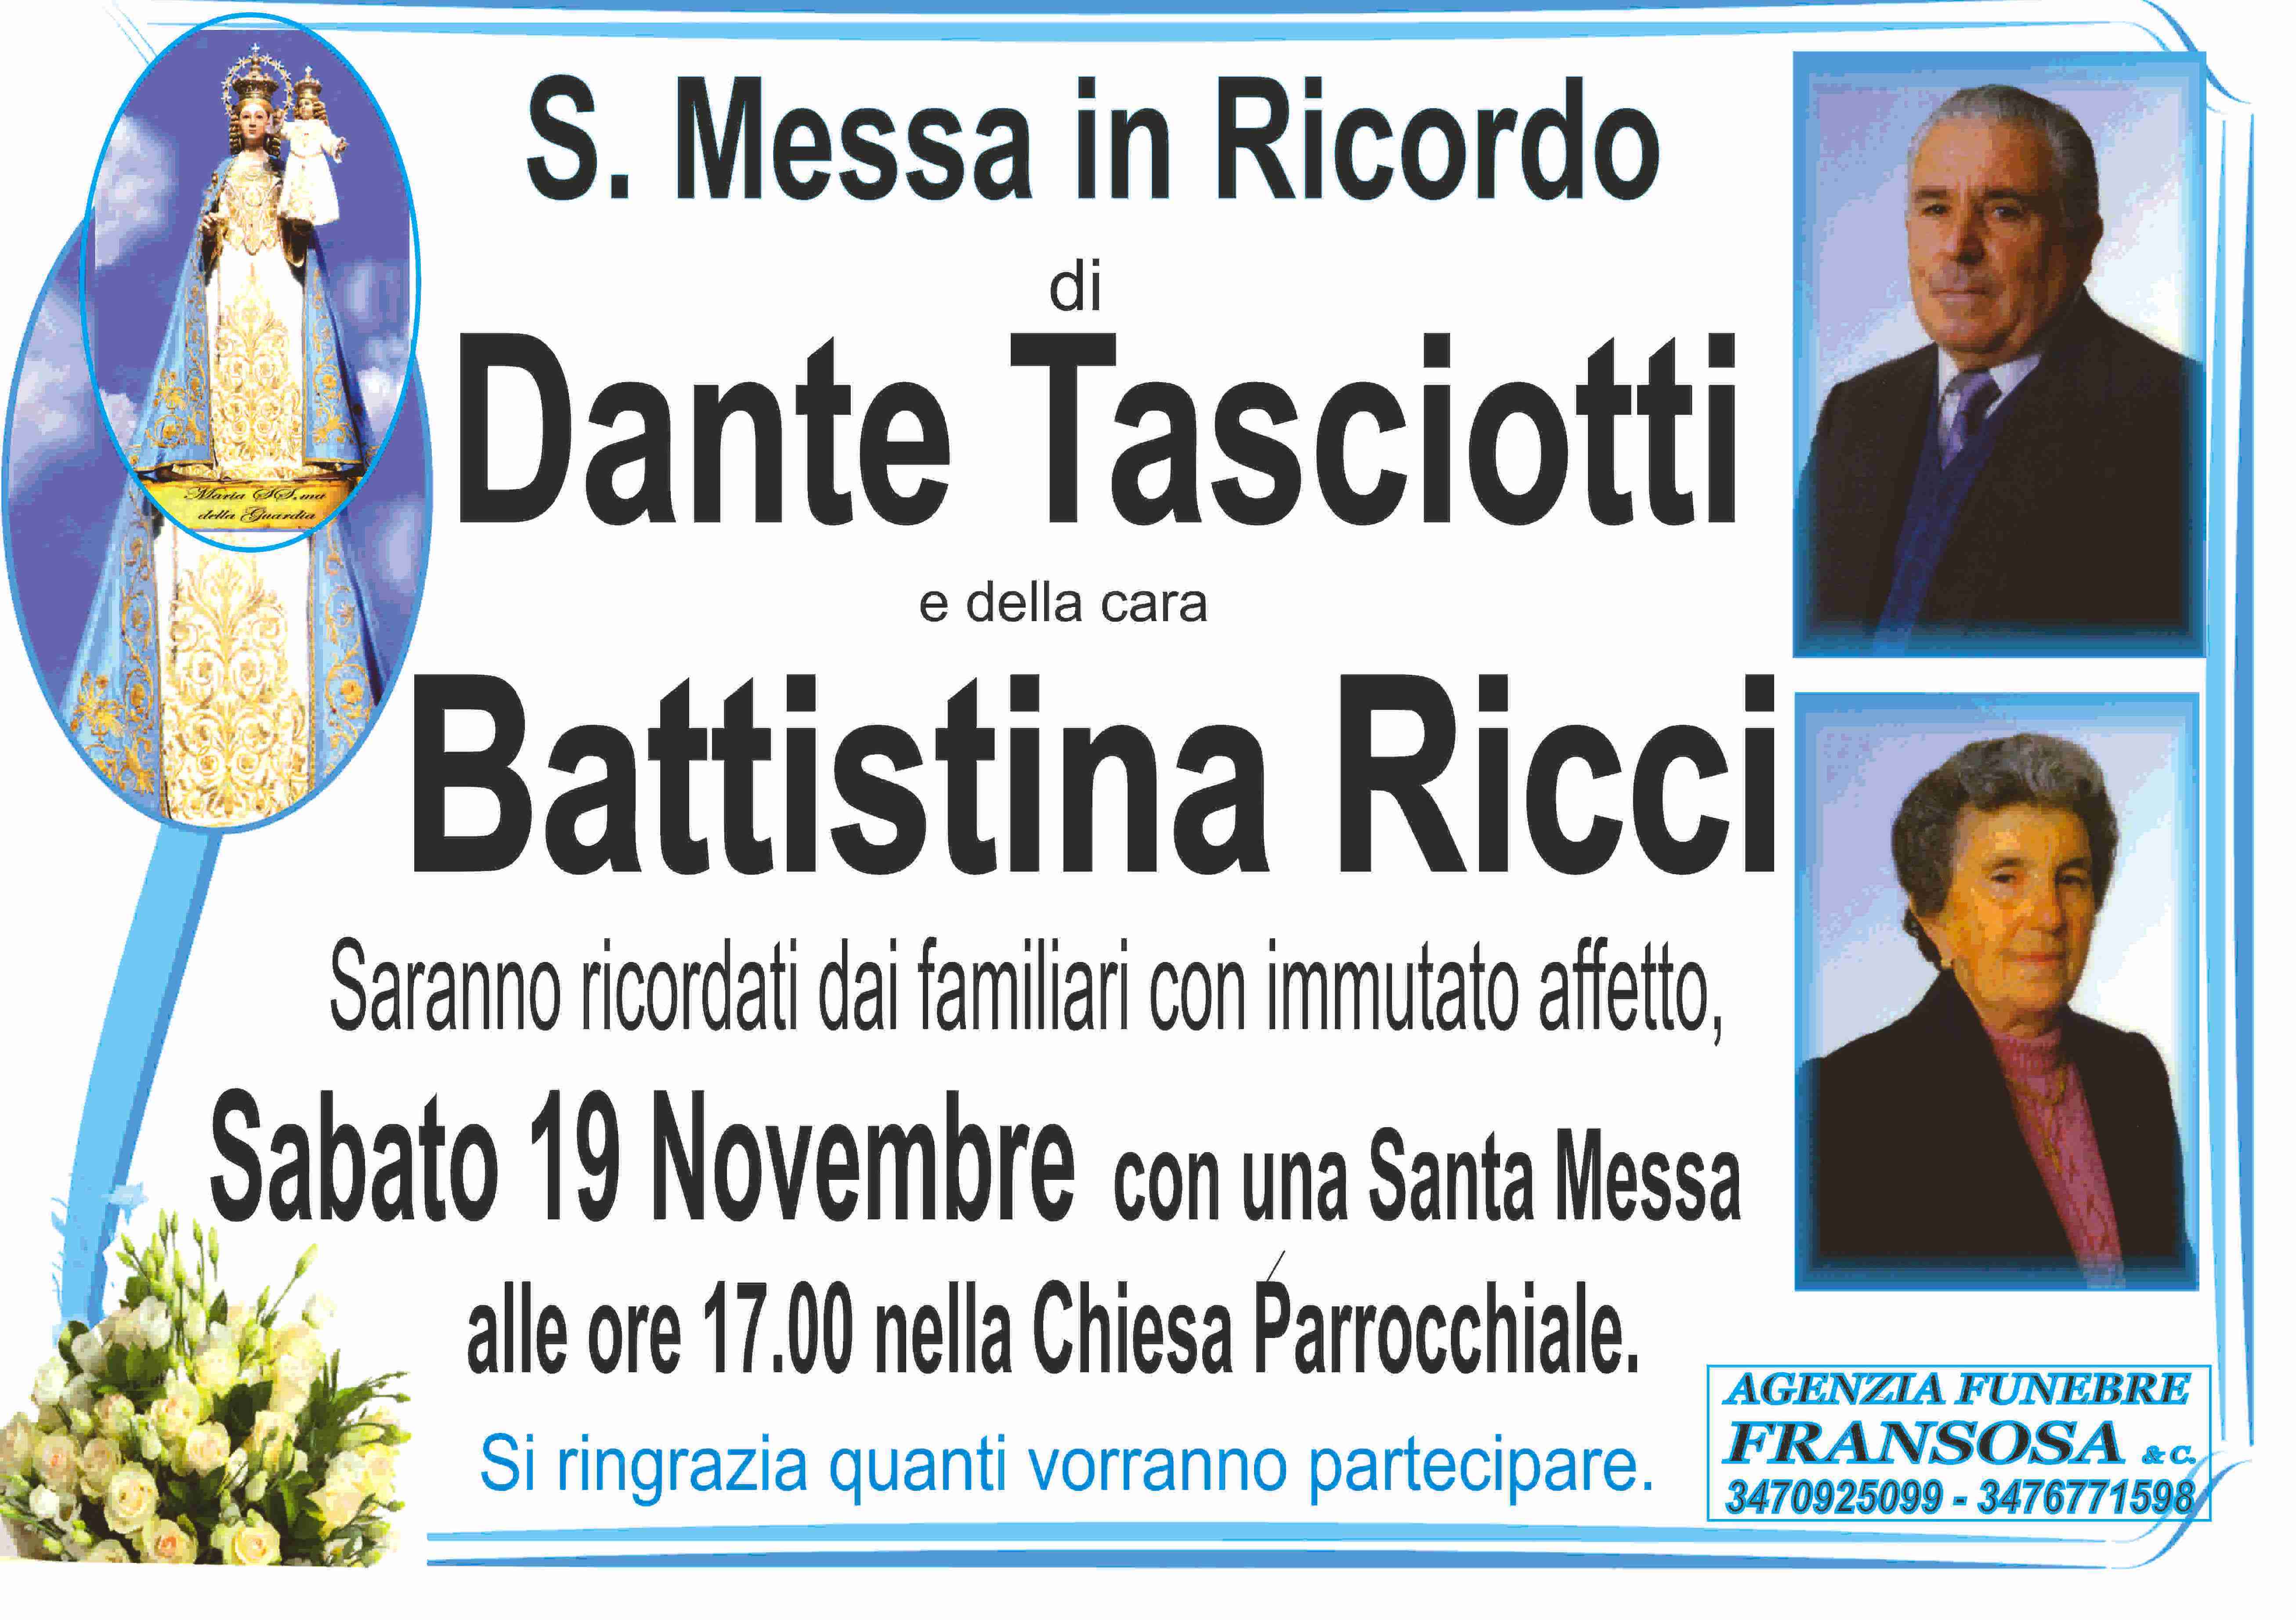 Dante Tasciotti e Battistina Ricci